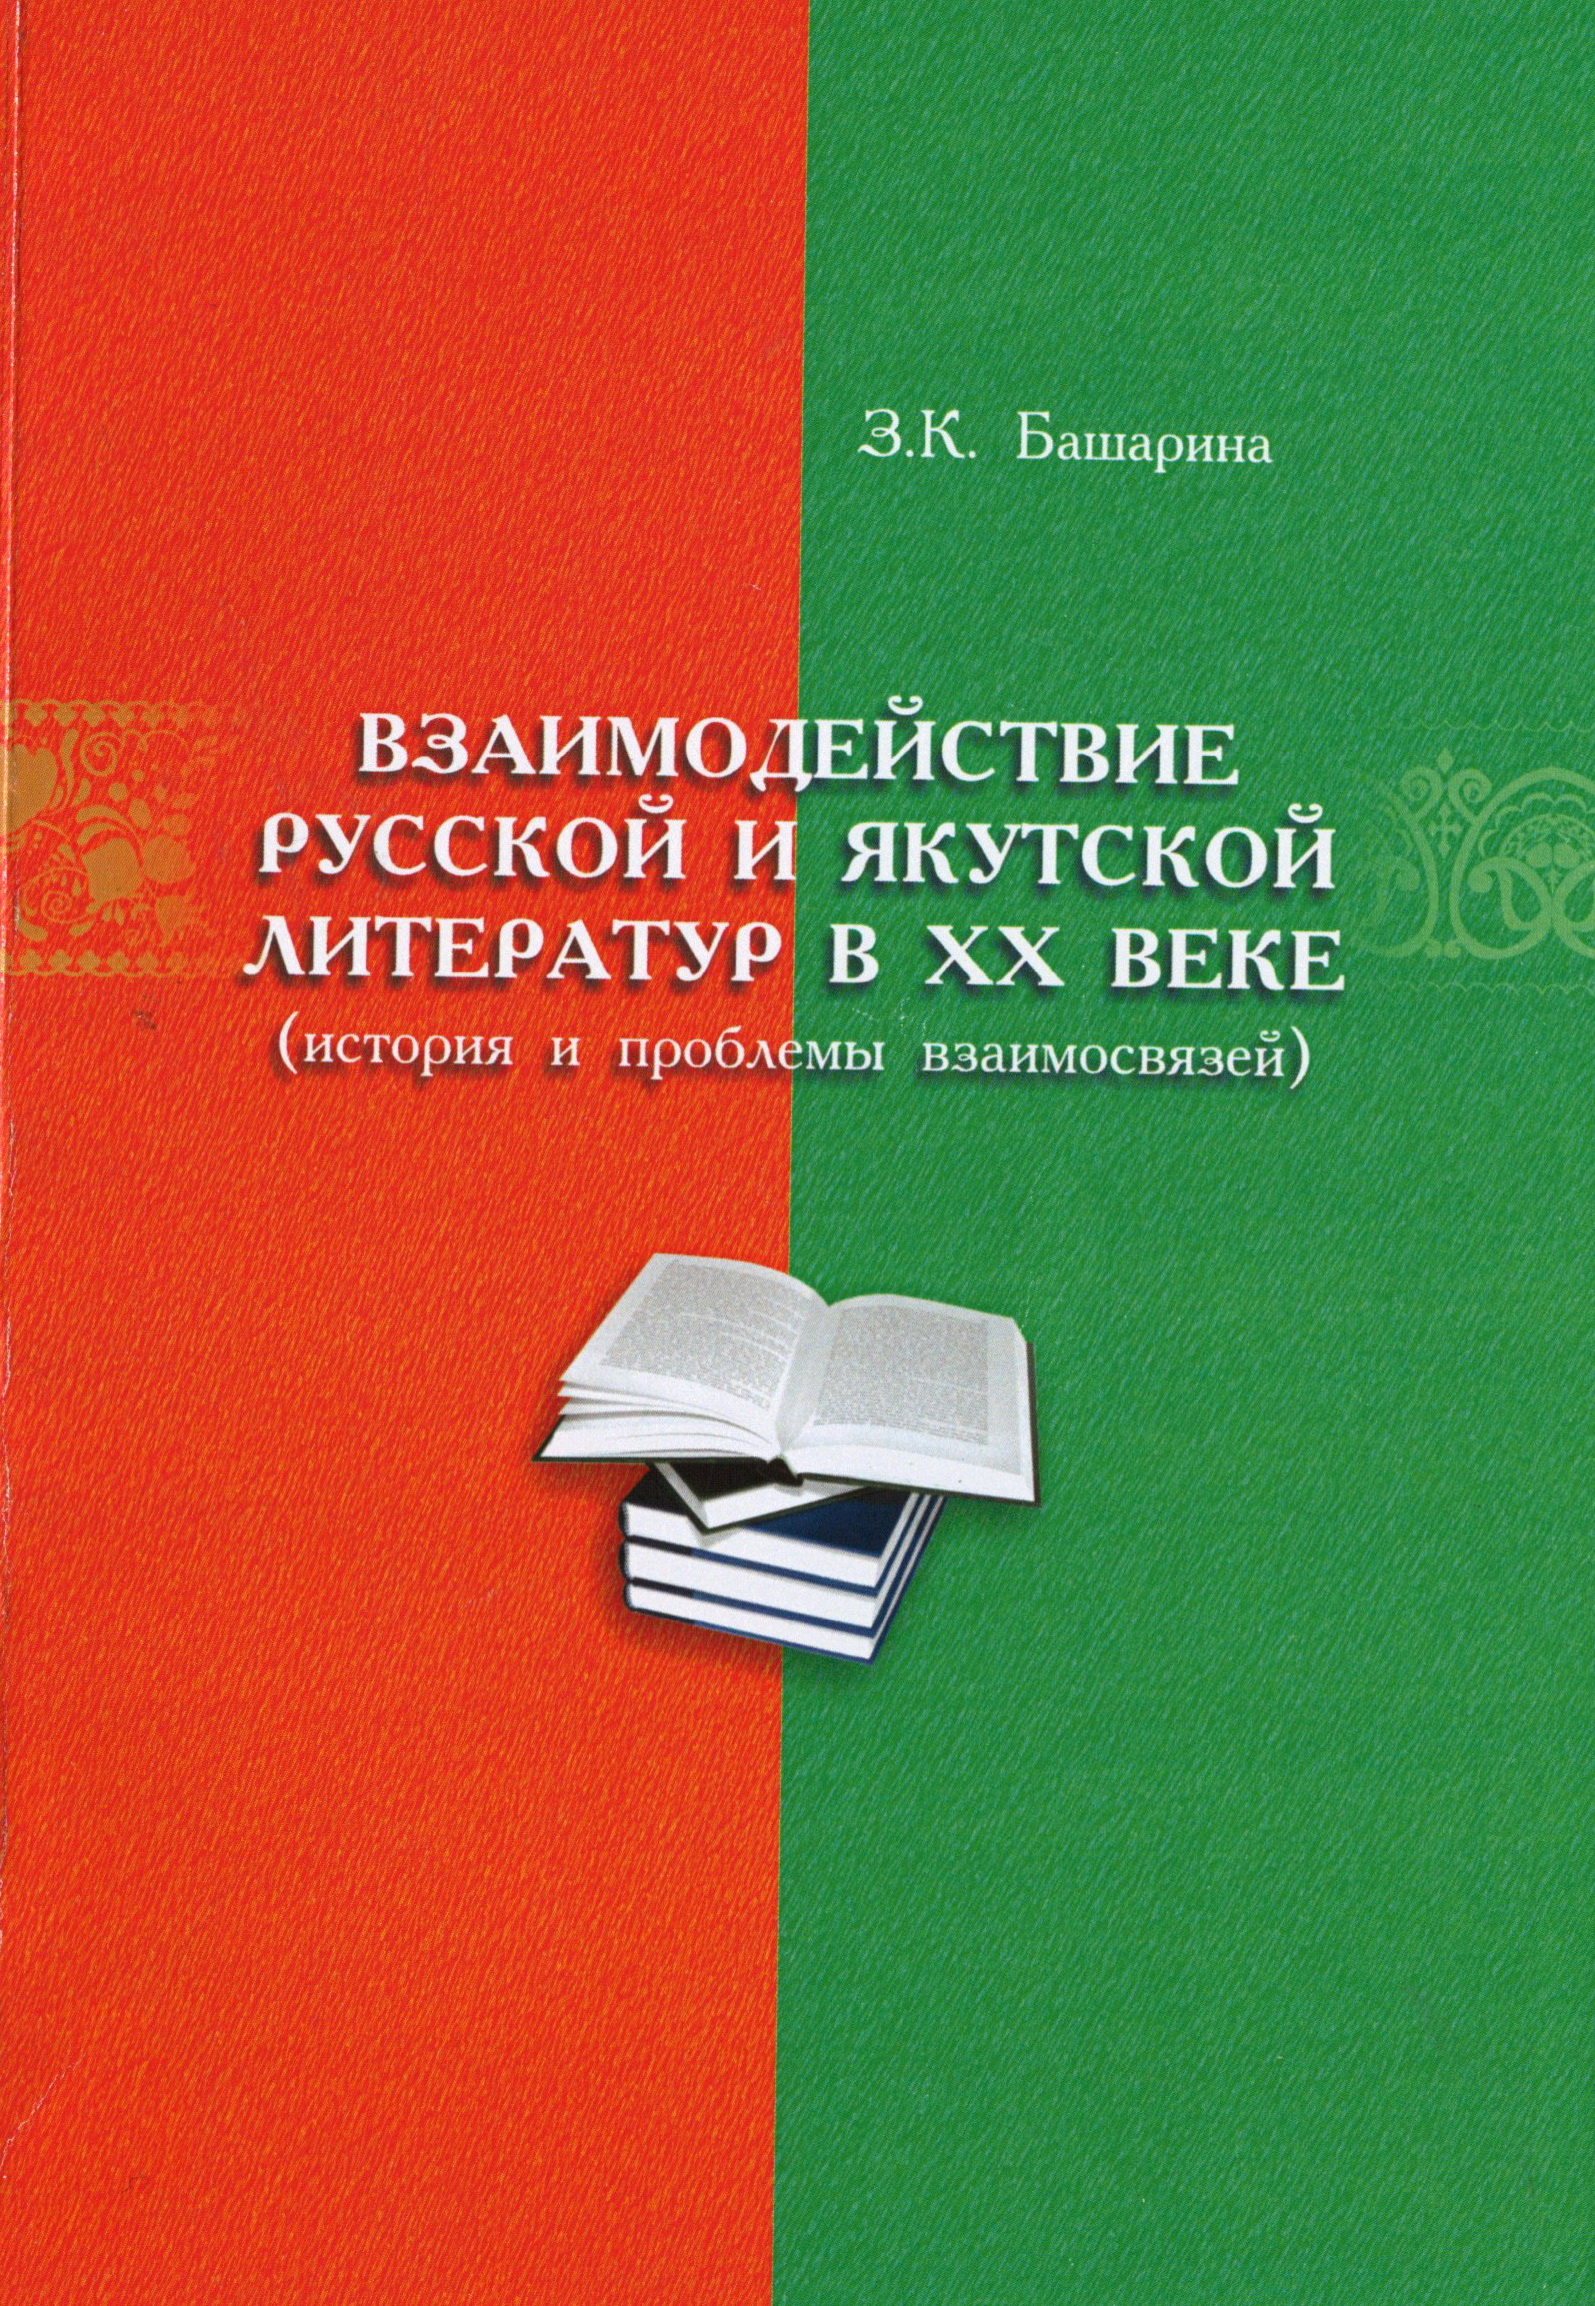 Взаимодействие русской и якутской литератур в ХХ веке (история и проблемы взаимосвязей)